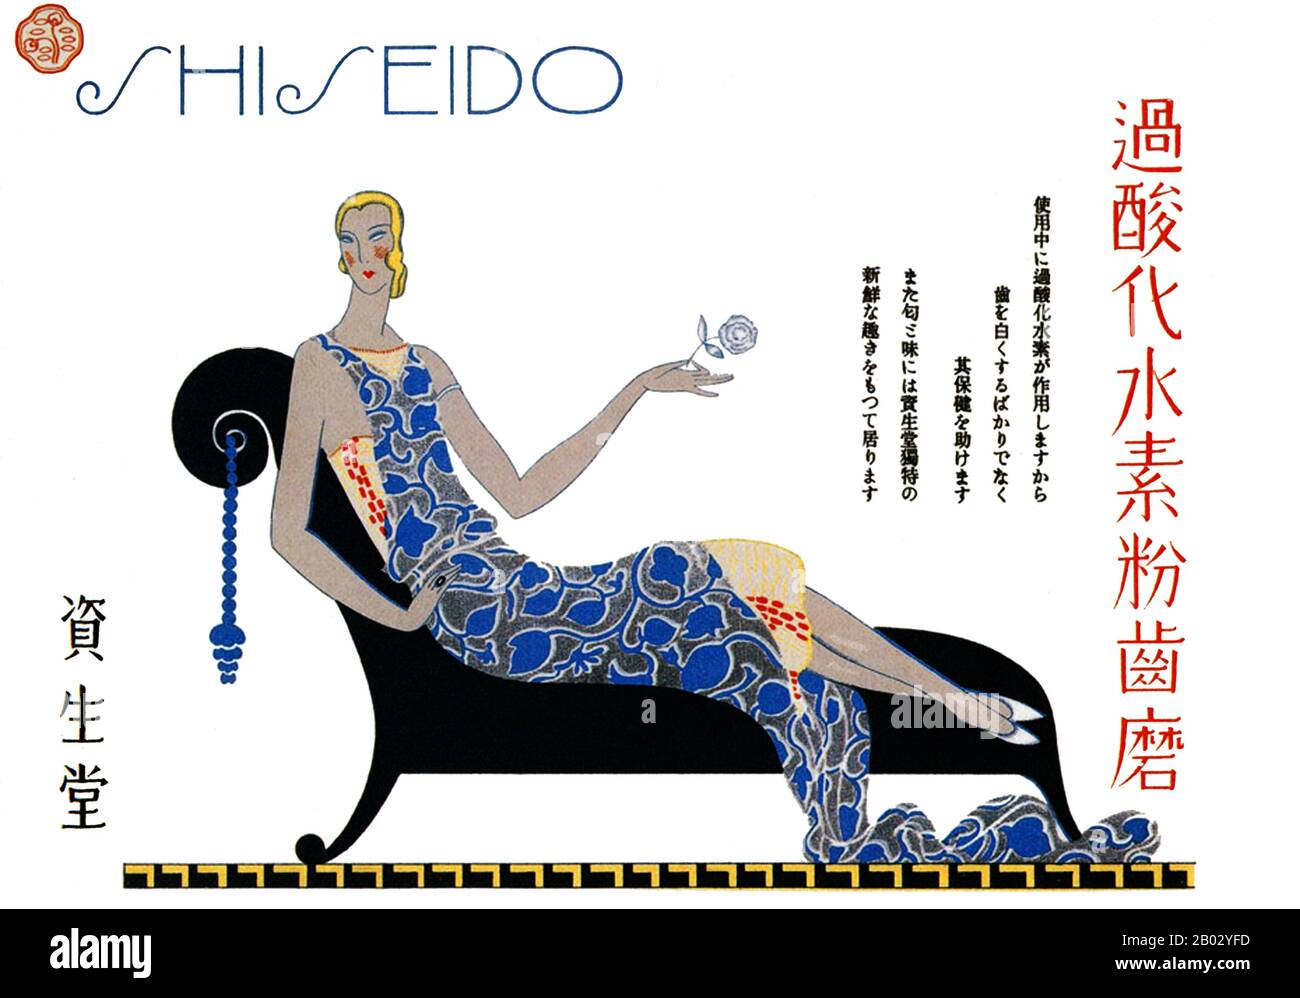 Shiseido est un producteur japonais de soins capillaires et de cosmétiques. C'est l'une des plus anciennes sociétés de cosmétiques au monde. Fondée en 1872, elle a célébré son 140ème anniversaire en 2012. C'est la plus grande entreprise cosmétique au Japon et la quatrième plus grande société cosmétique au monde. Banque D'Images